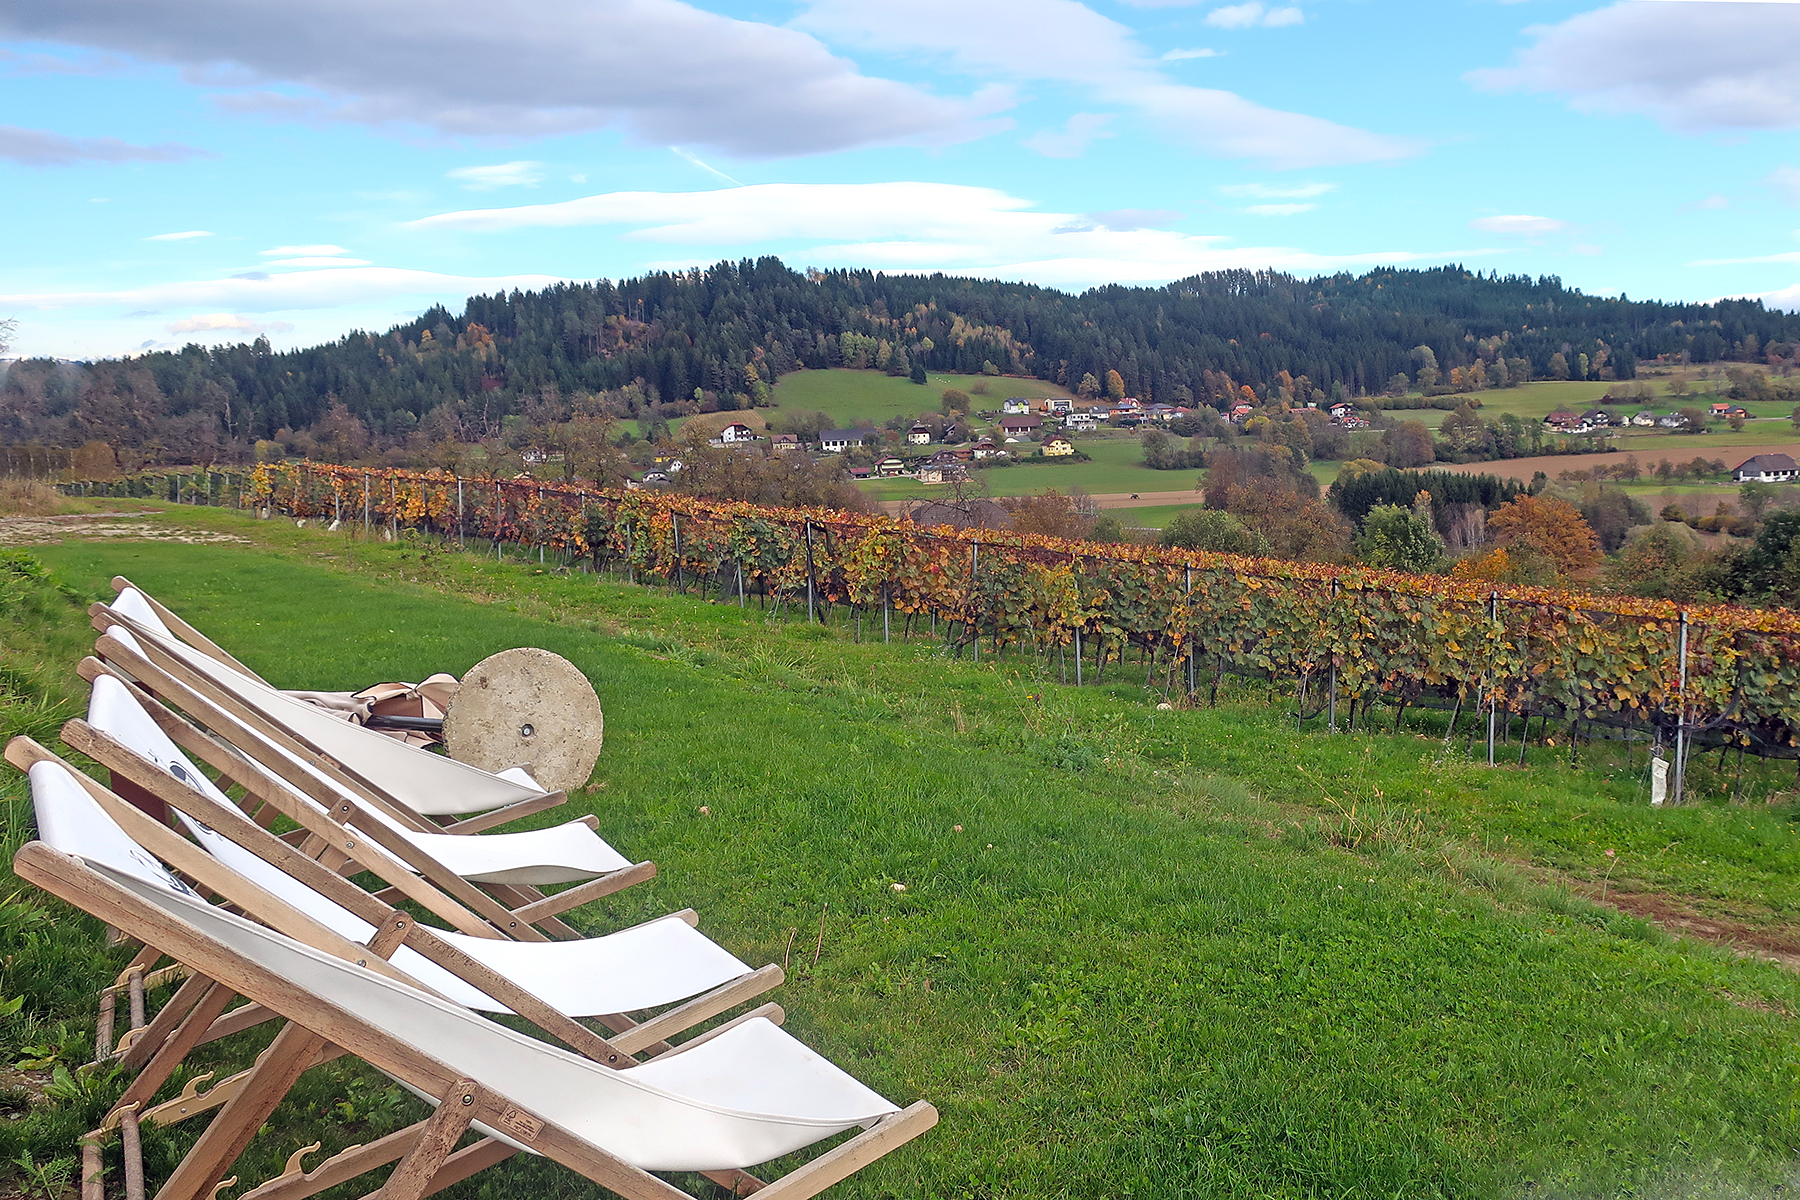 Wein aus Kärnten: 7 Orte in Mittelkärnten, wo man Kärntner Wein genießen kann